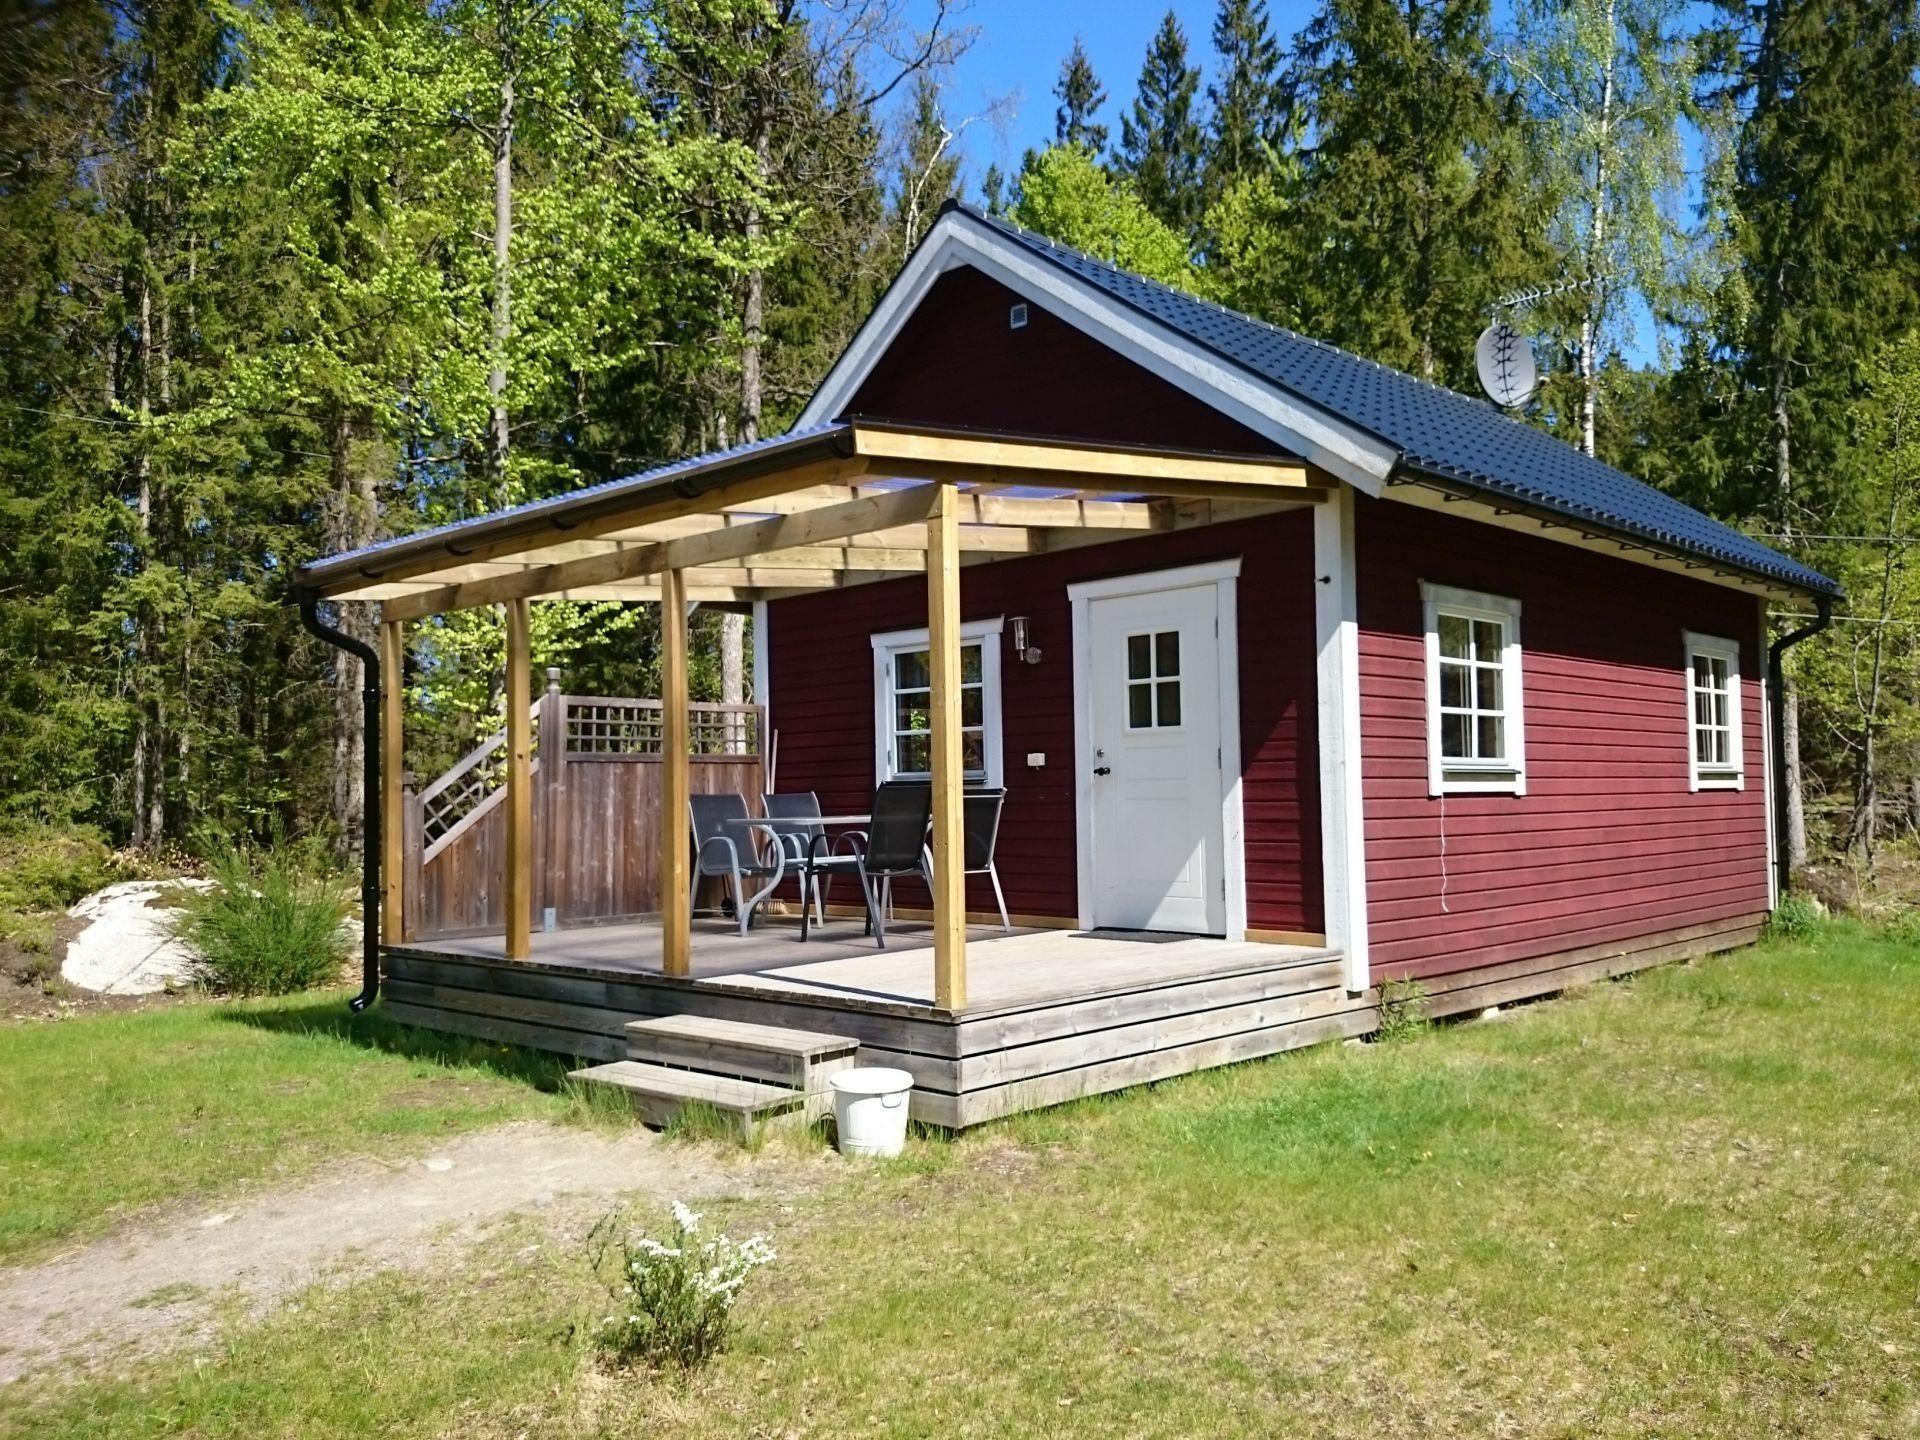 Ferienhaus mit großer Terrasse und eigenem R Ferienhaus in Schweden